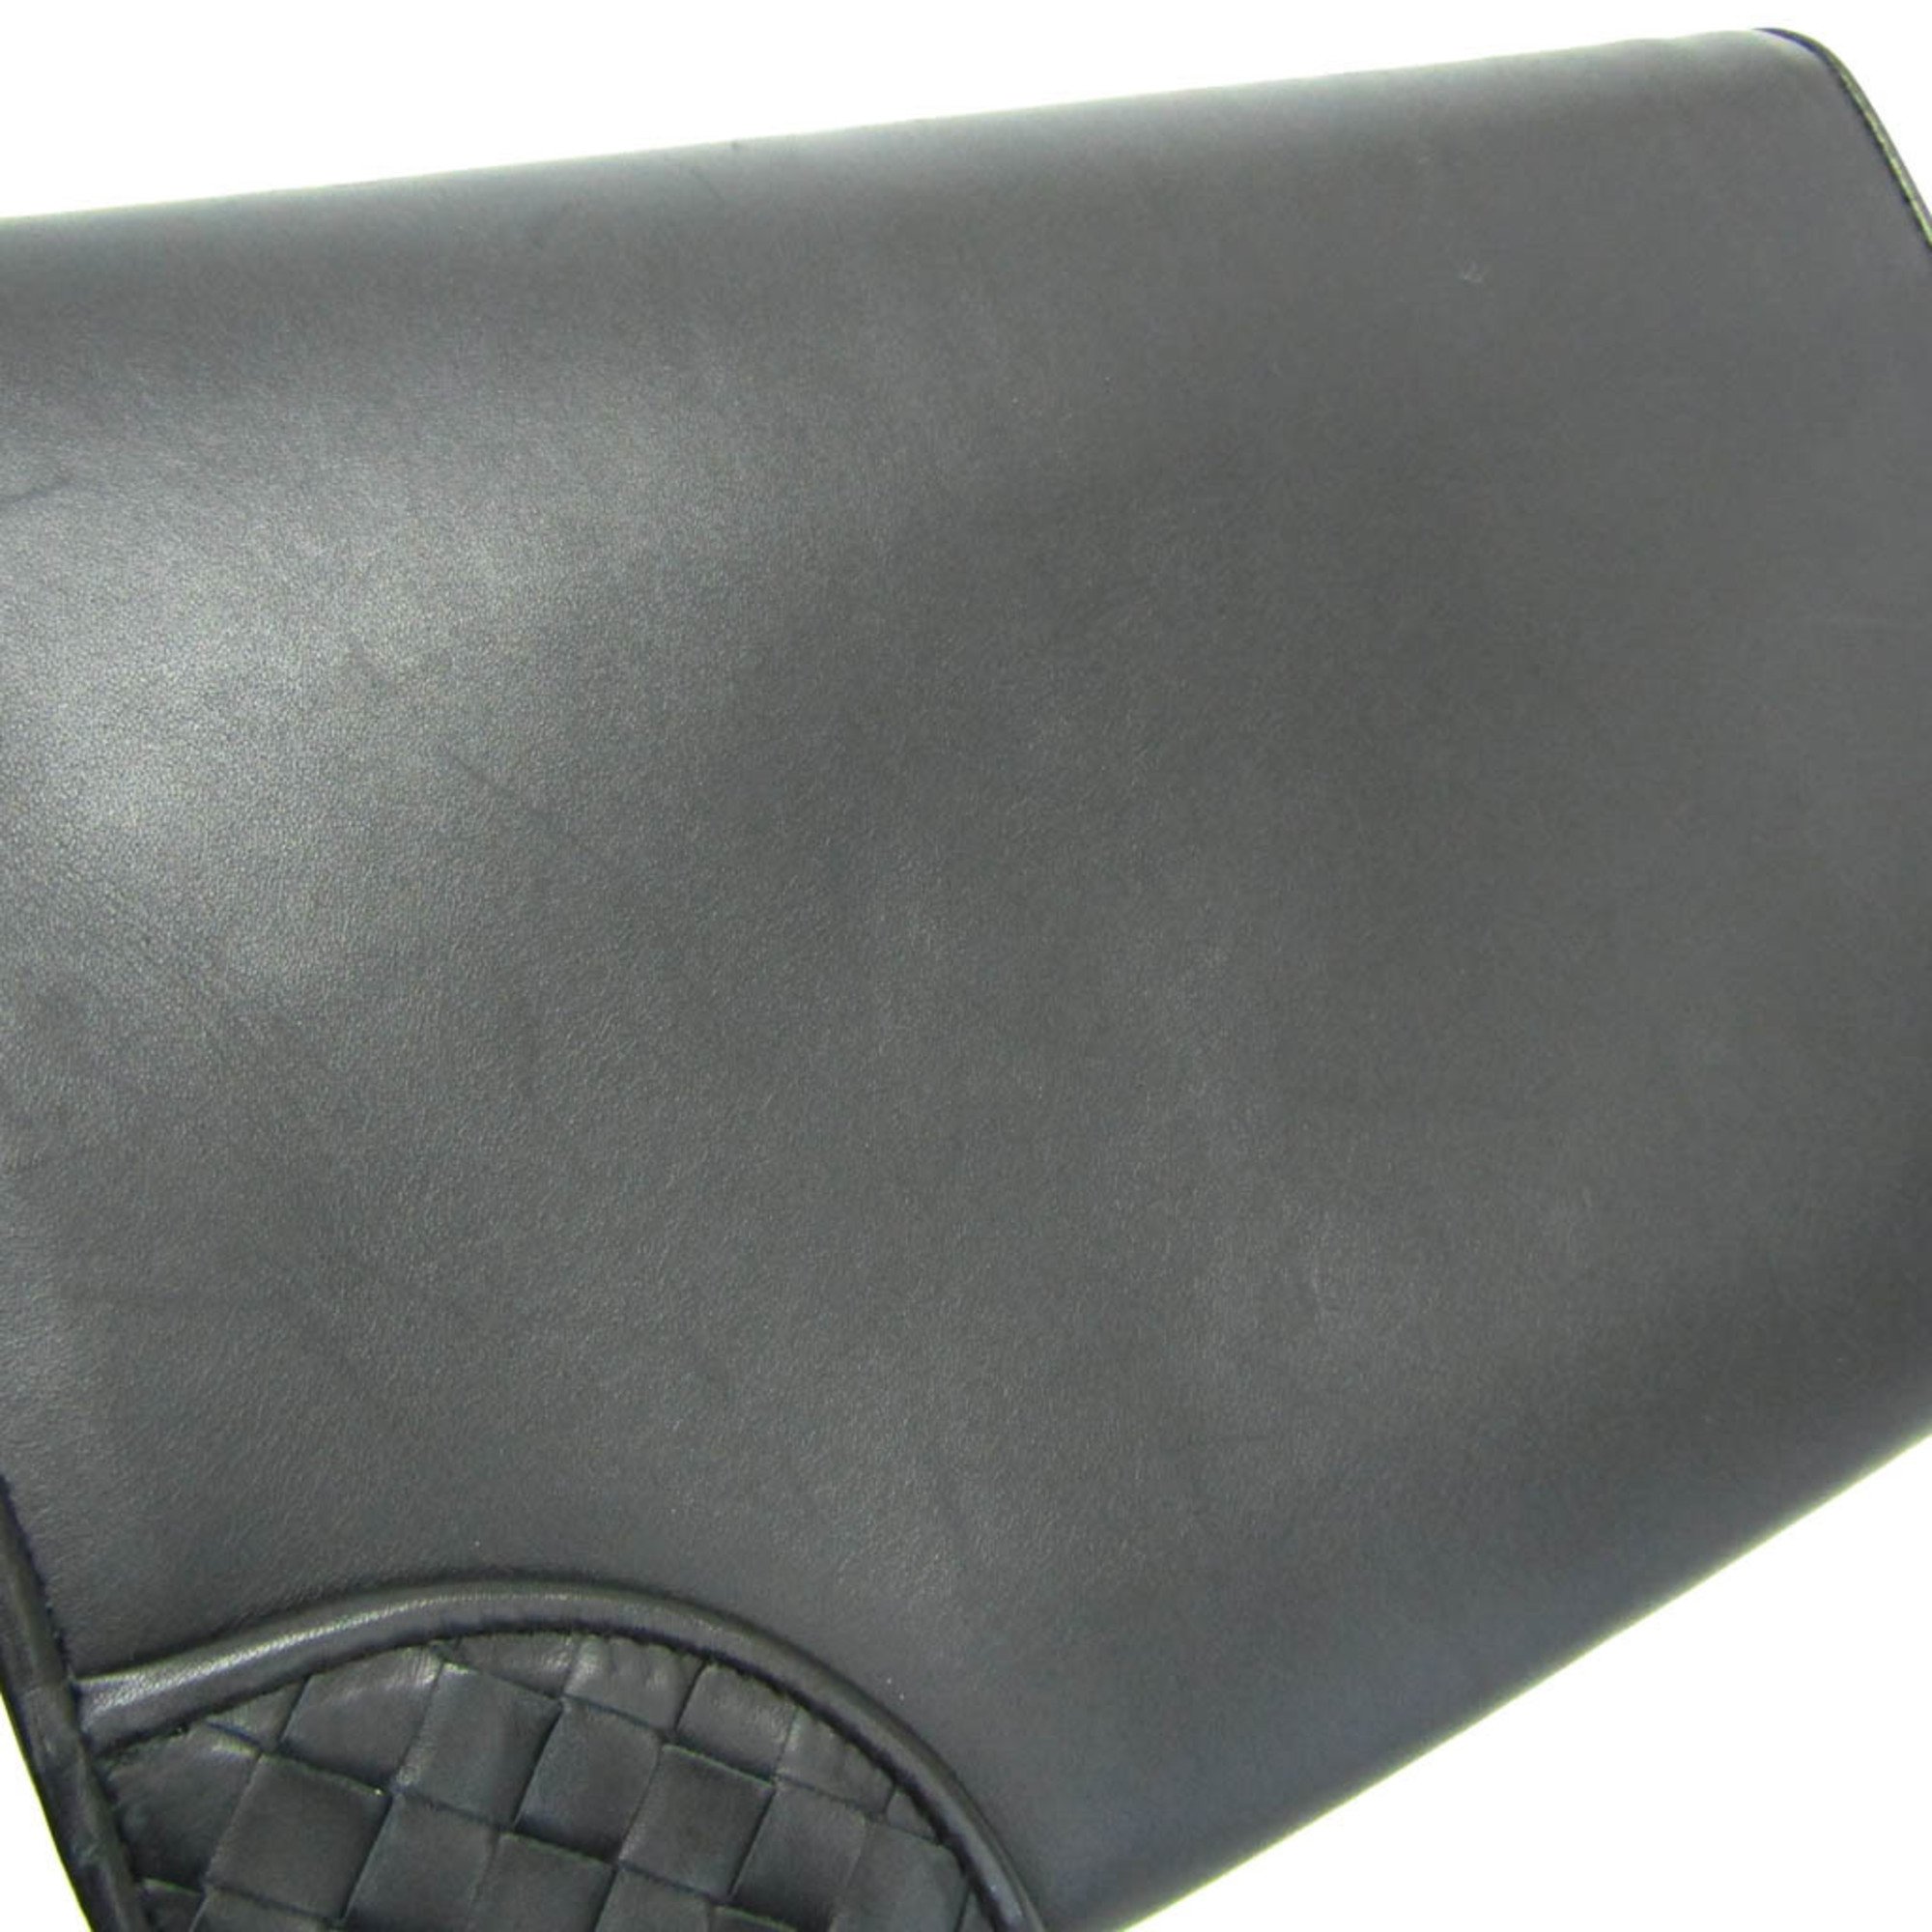 Bottega Veneta Intrecciato 145186 Men's Leather Clutch Bag Black